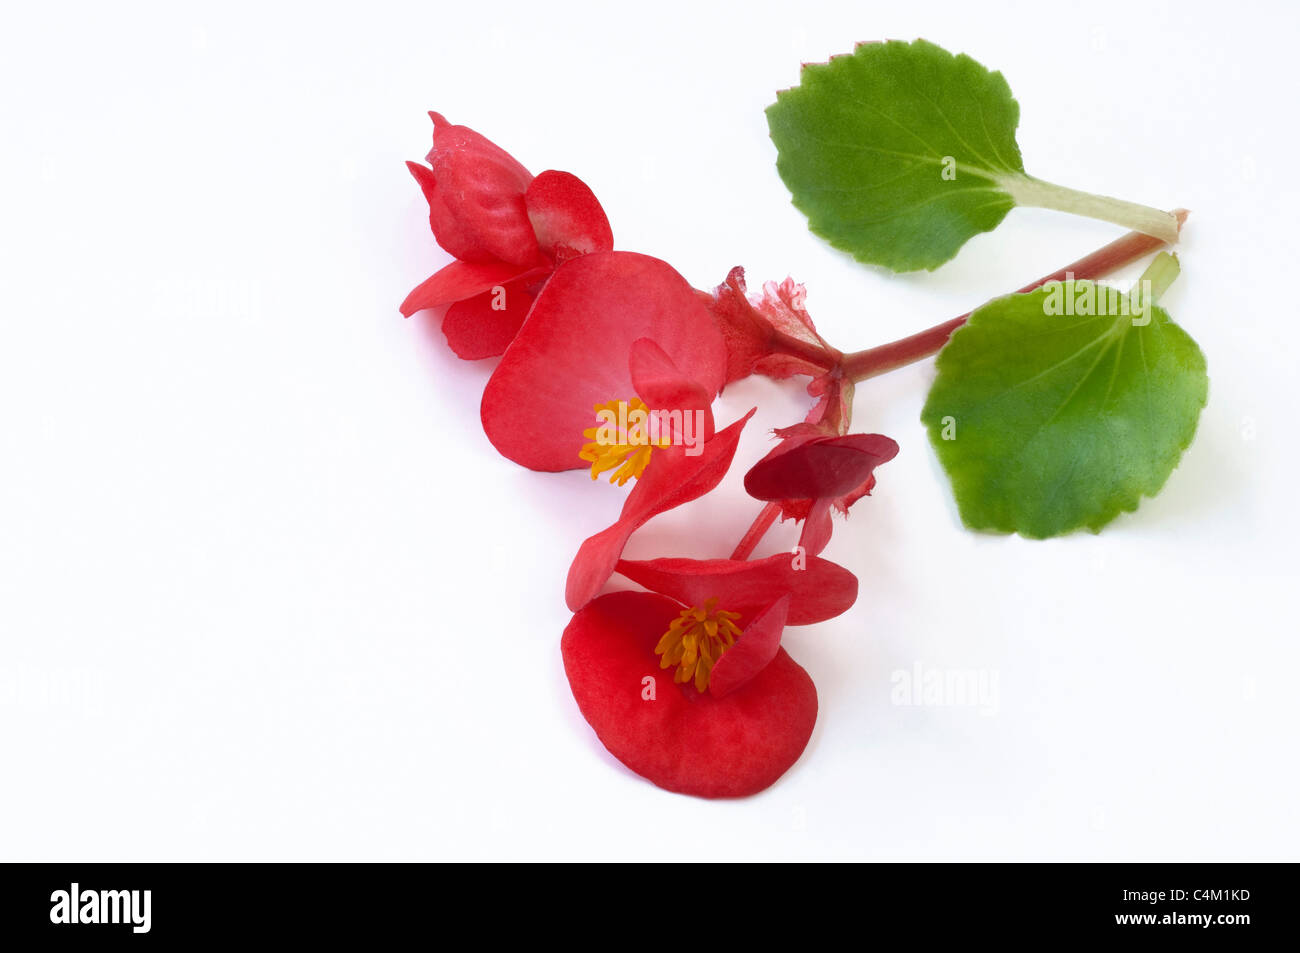 Wax Begonia, Wax-leaf Begonia (Begonia x semperfloren-cultorum), red flowers and leaves. Studio picture. Stock Photo